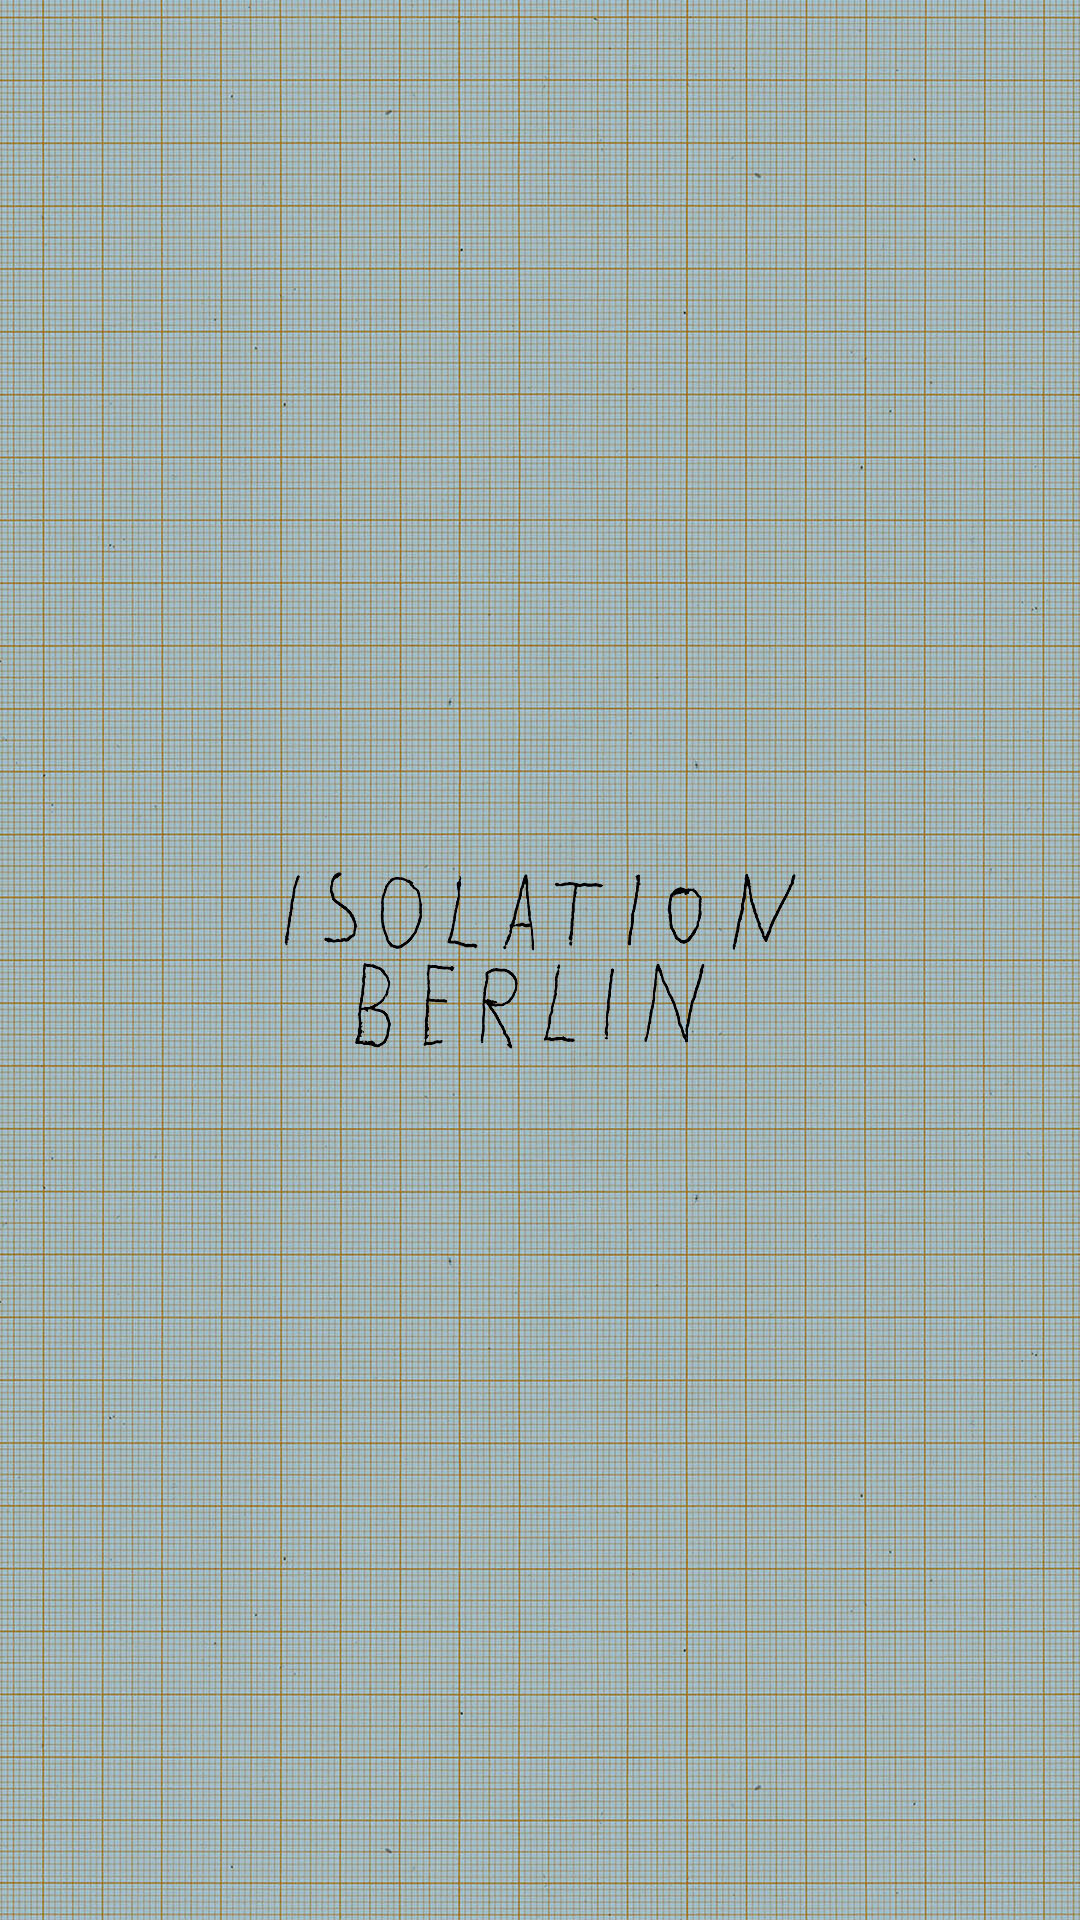 (c) Isolationberlin.de